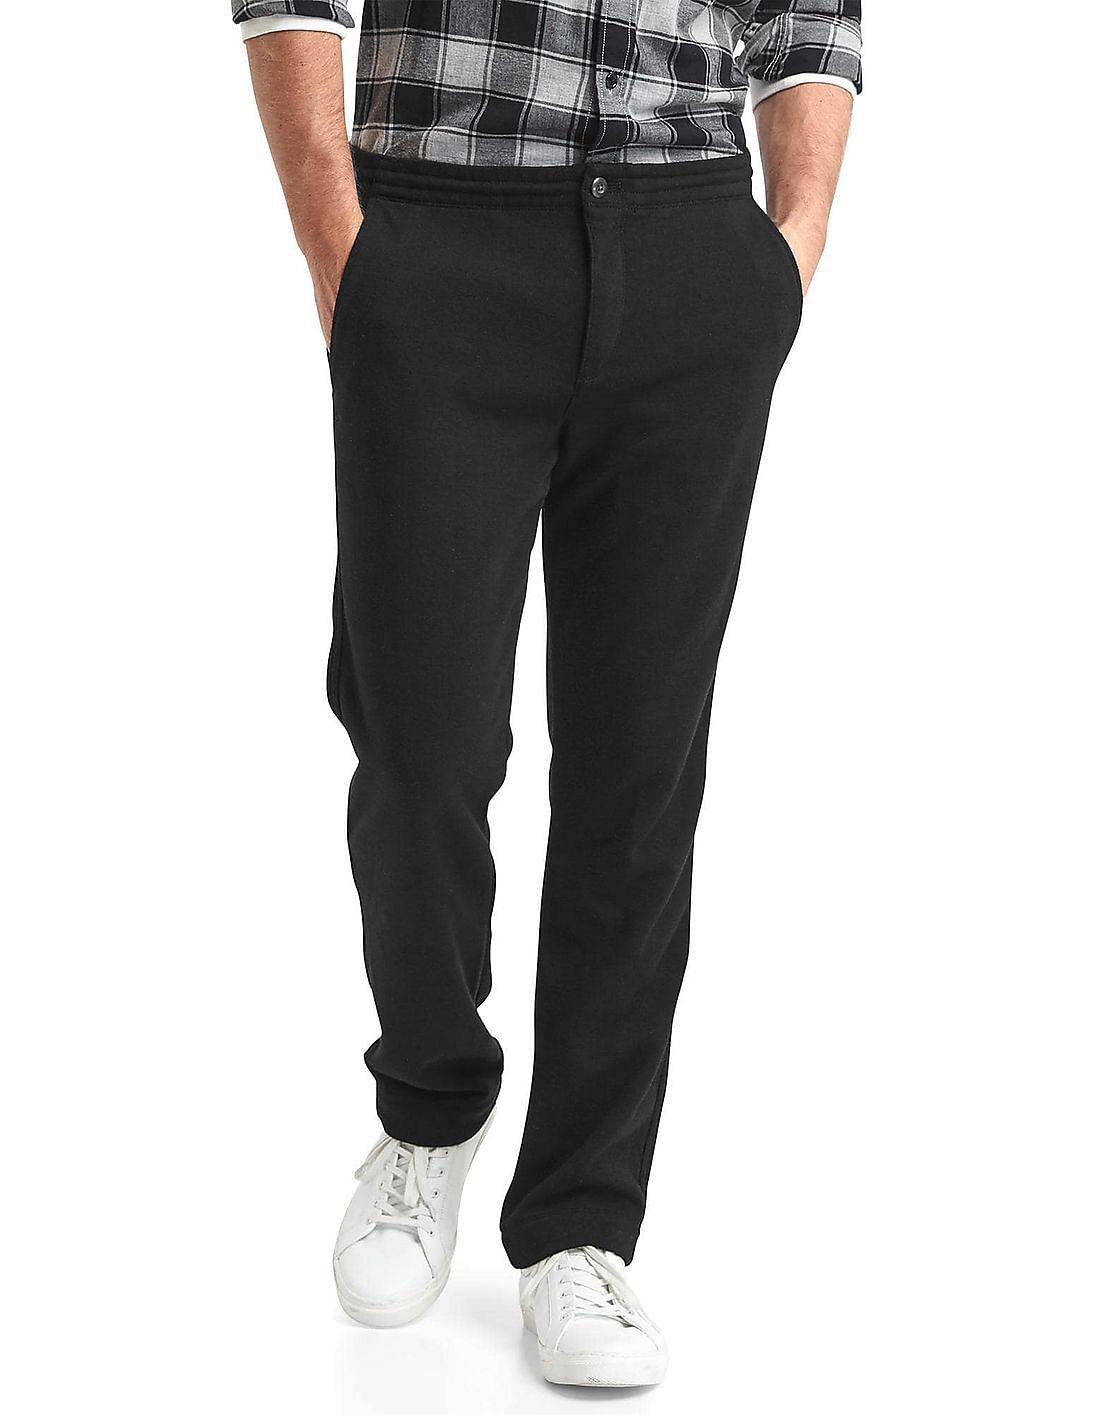 Buy GAP Men Black Supersoft Double Knit Slim Fit Pants - NNNOW.com